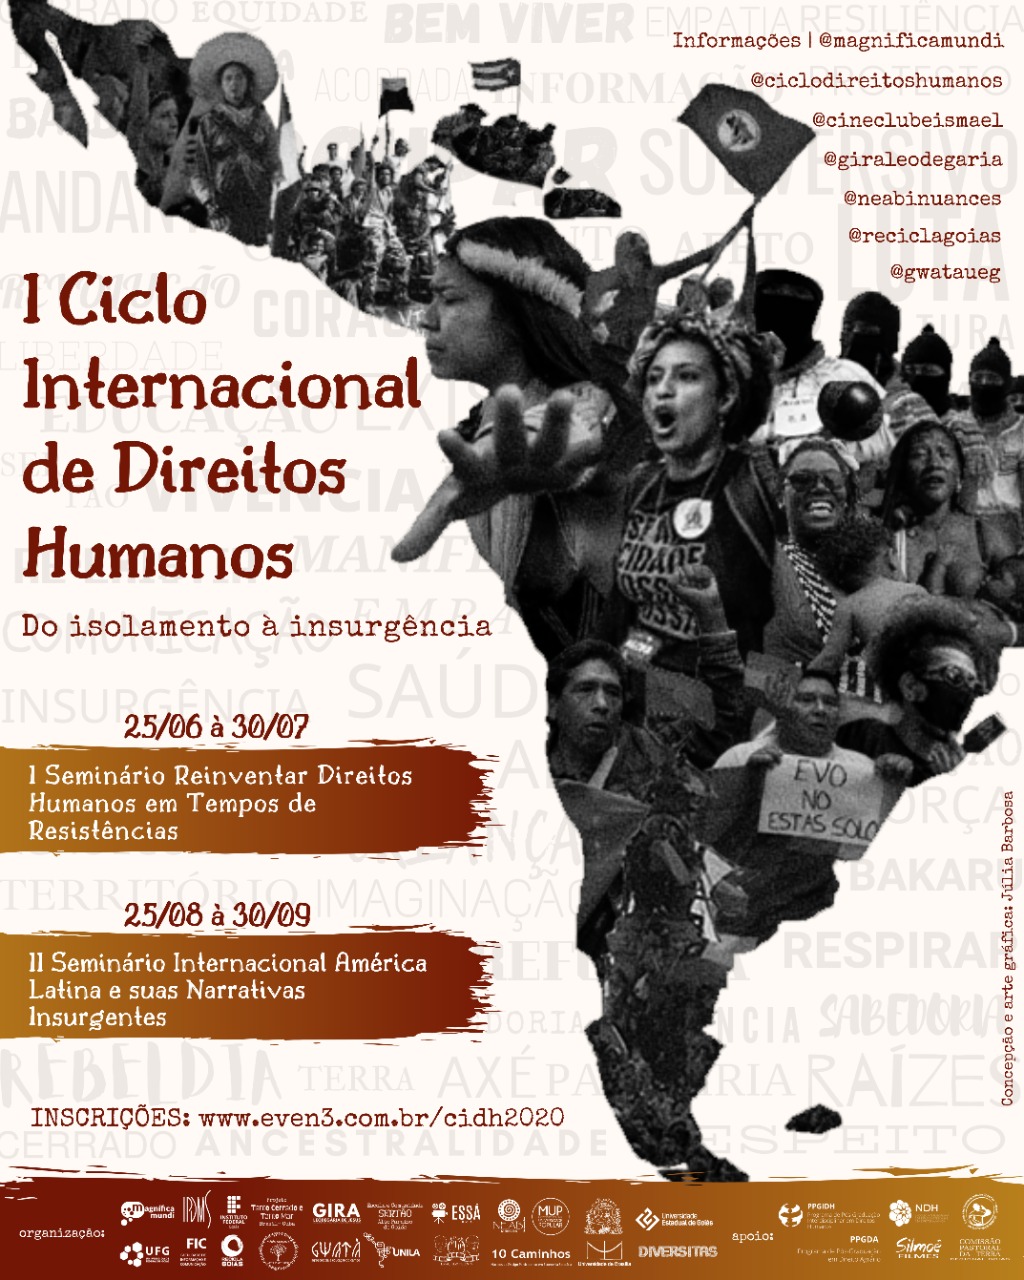 I Ciclo Internacional de Direitos Humanos: do isolamento à insurgência